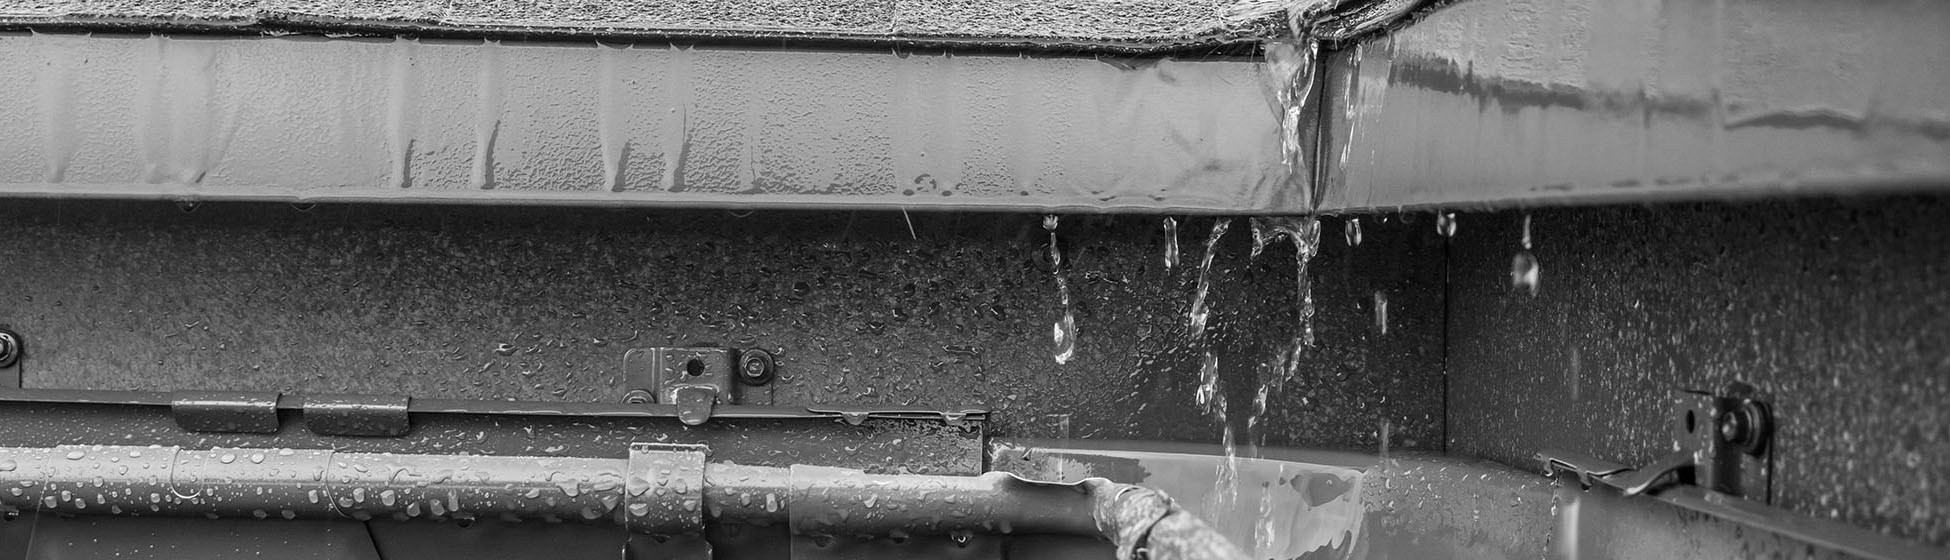 Installer une cuve de récupération d eau de pluie 1101010l